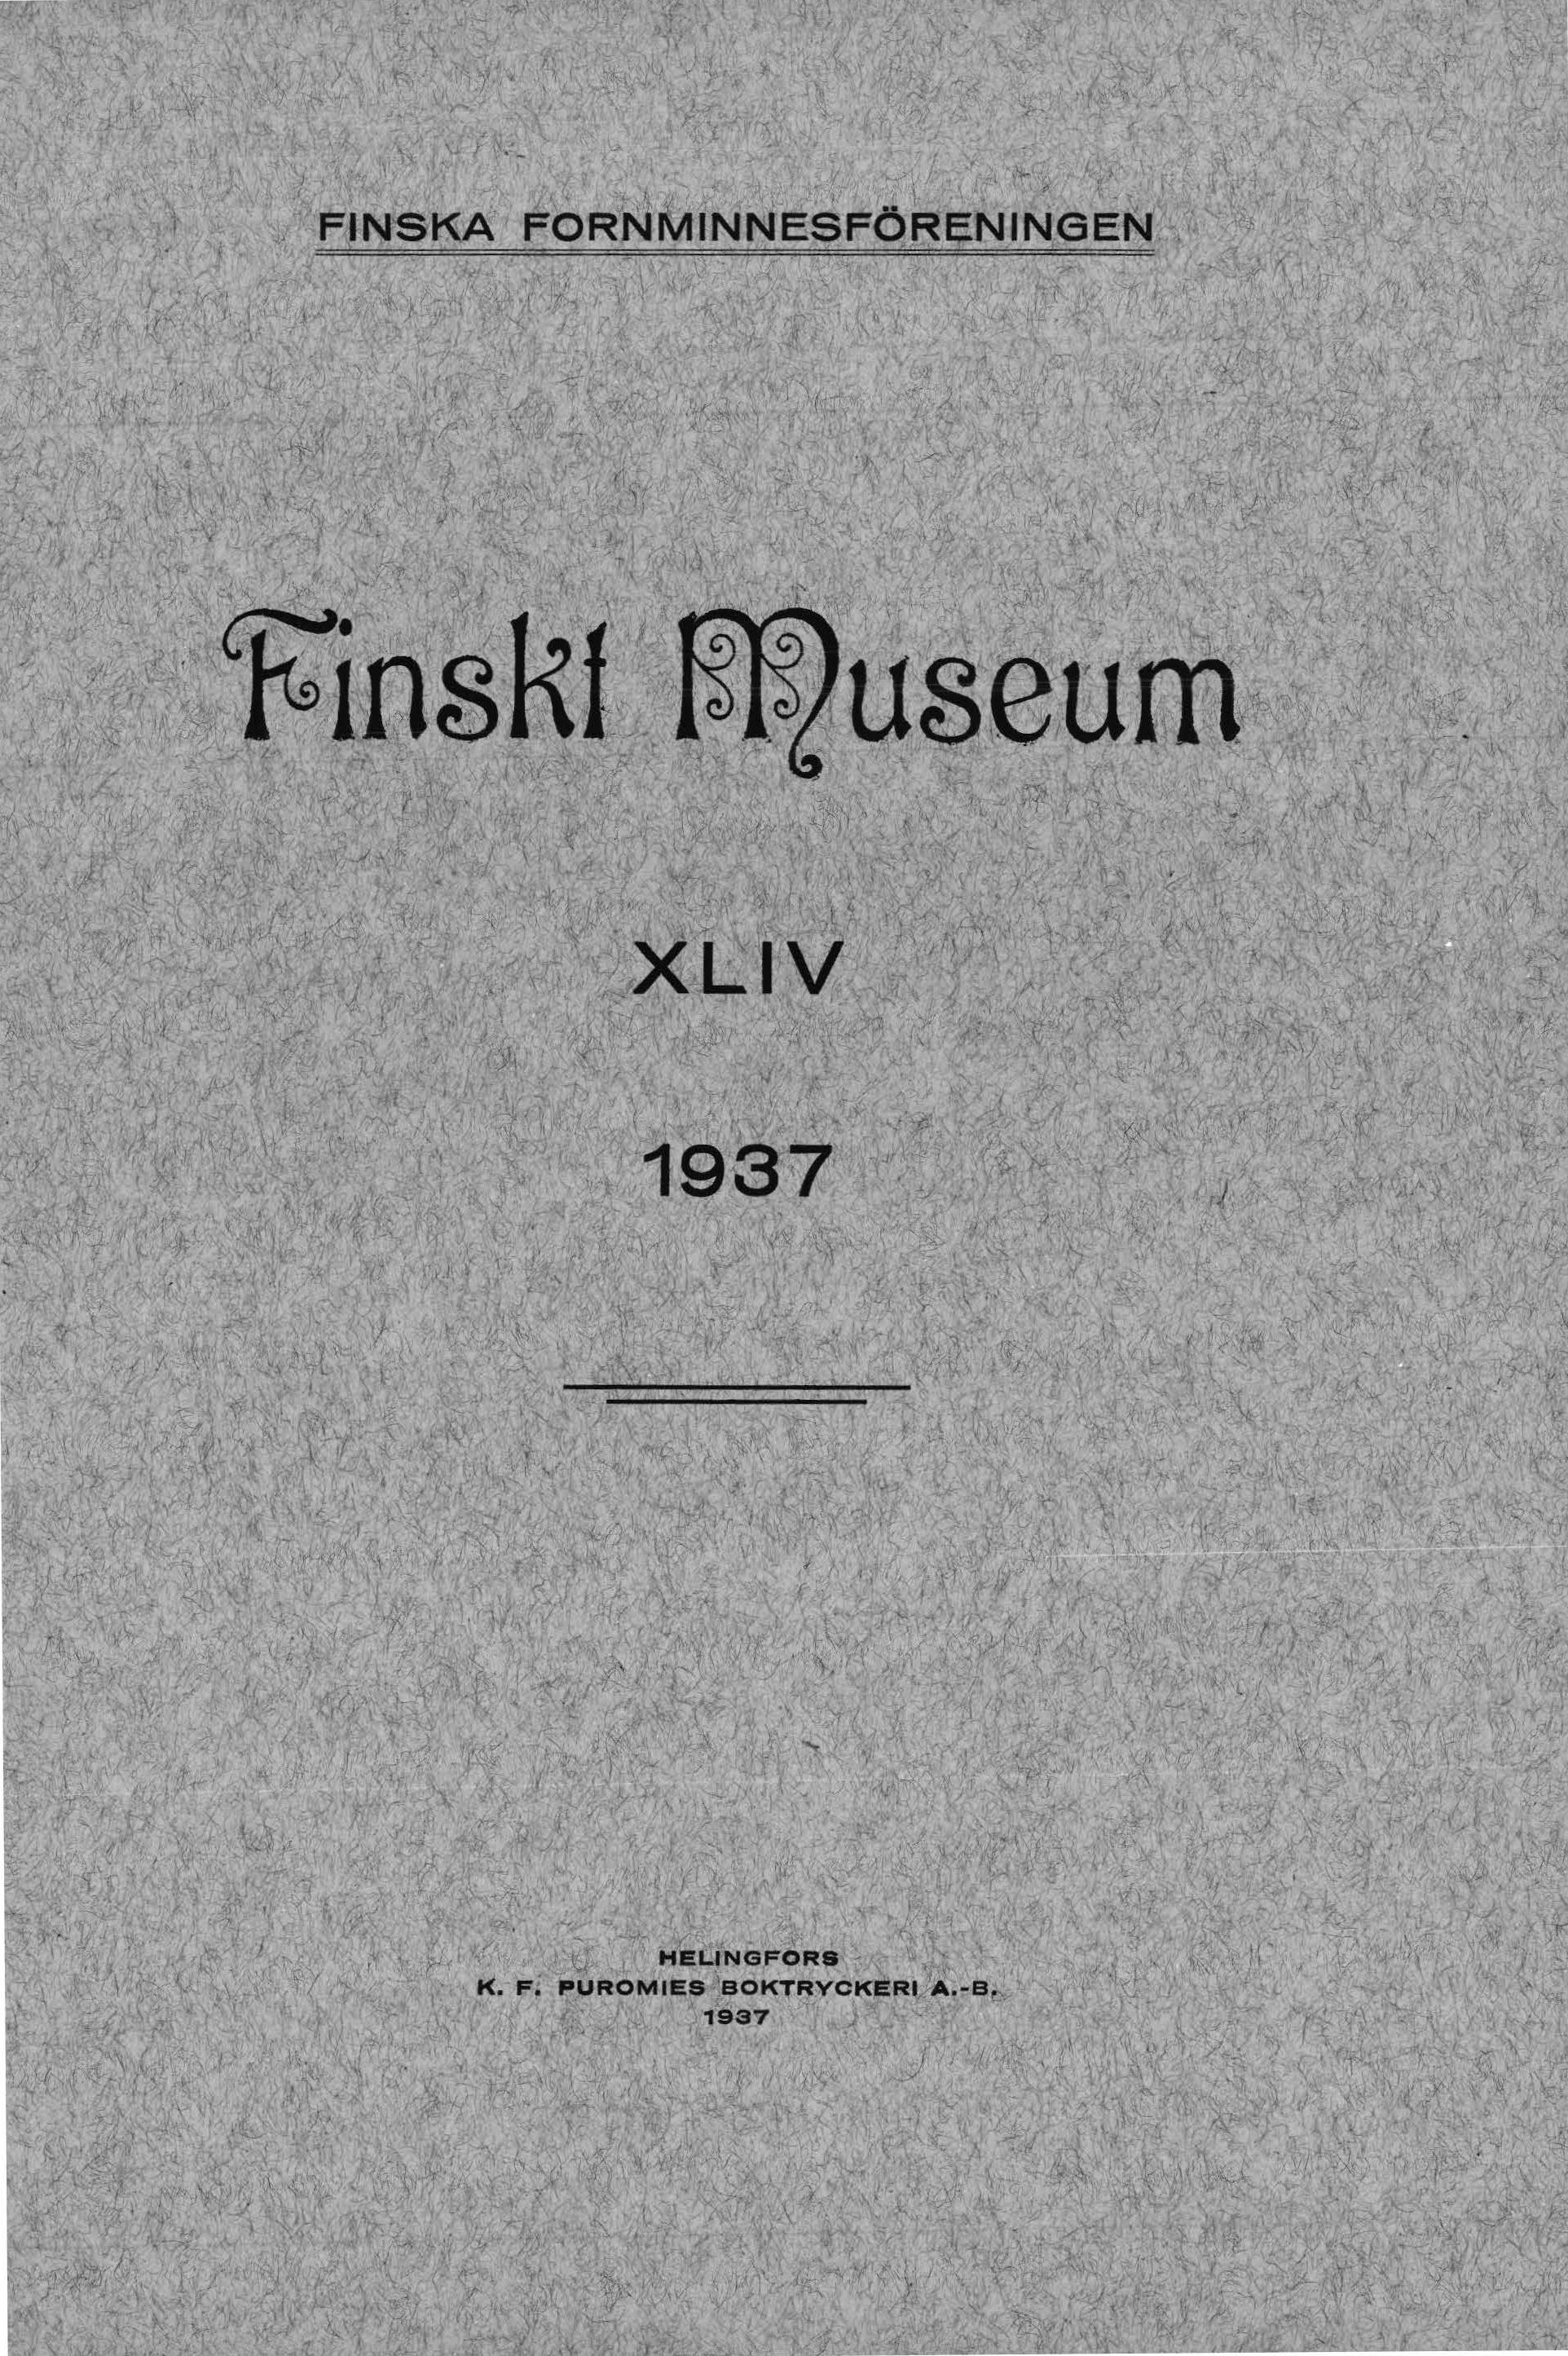 					Visa Vol 44: Finskt Museum 1937
				